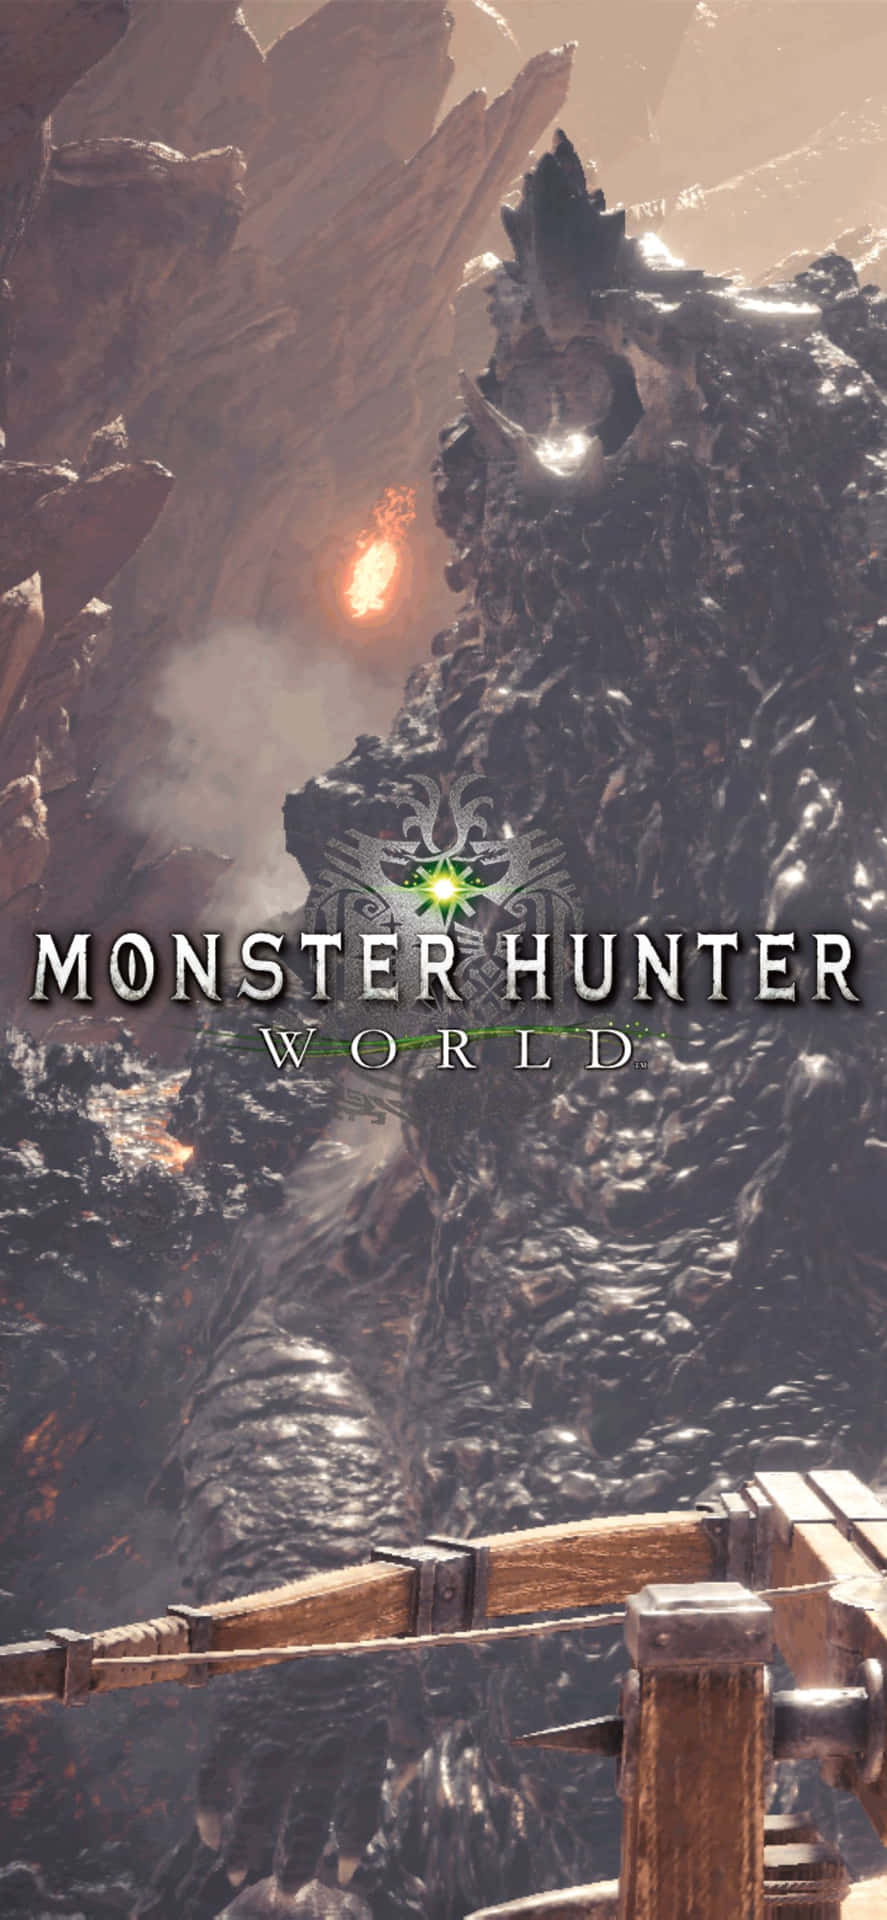 Iphonexs Max Monster Hunter World Fire Bakgrundsbild.